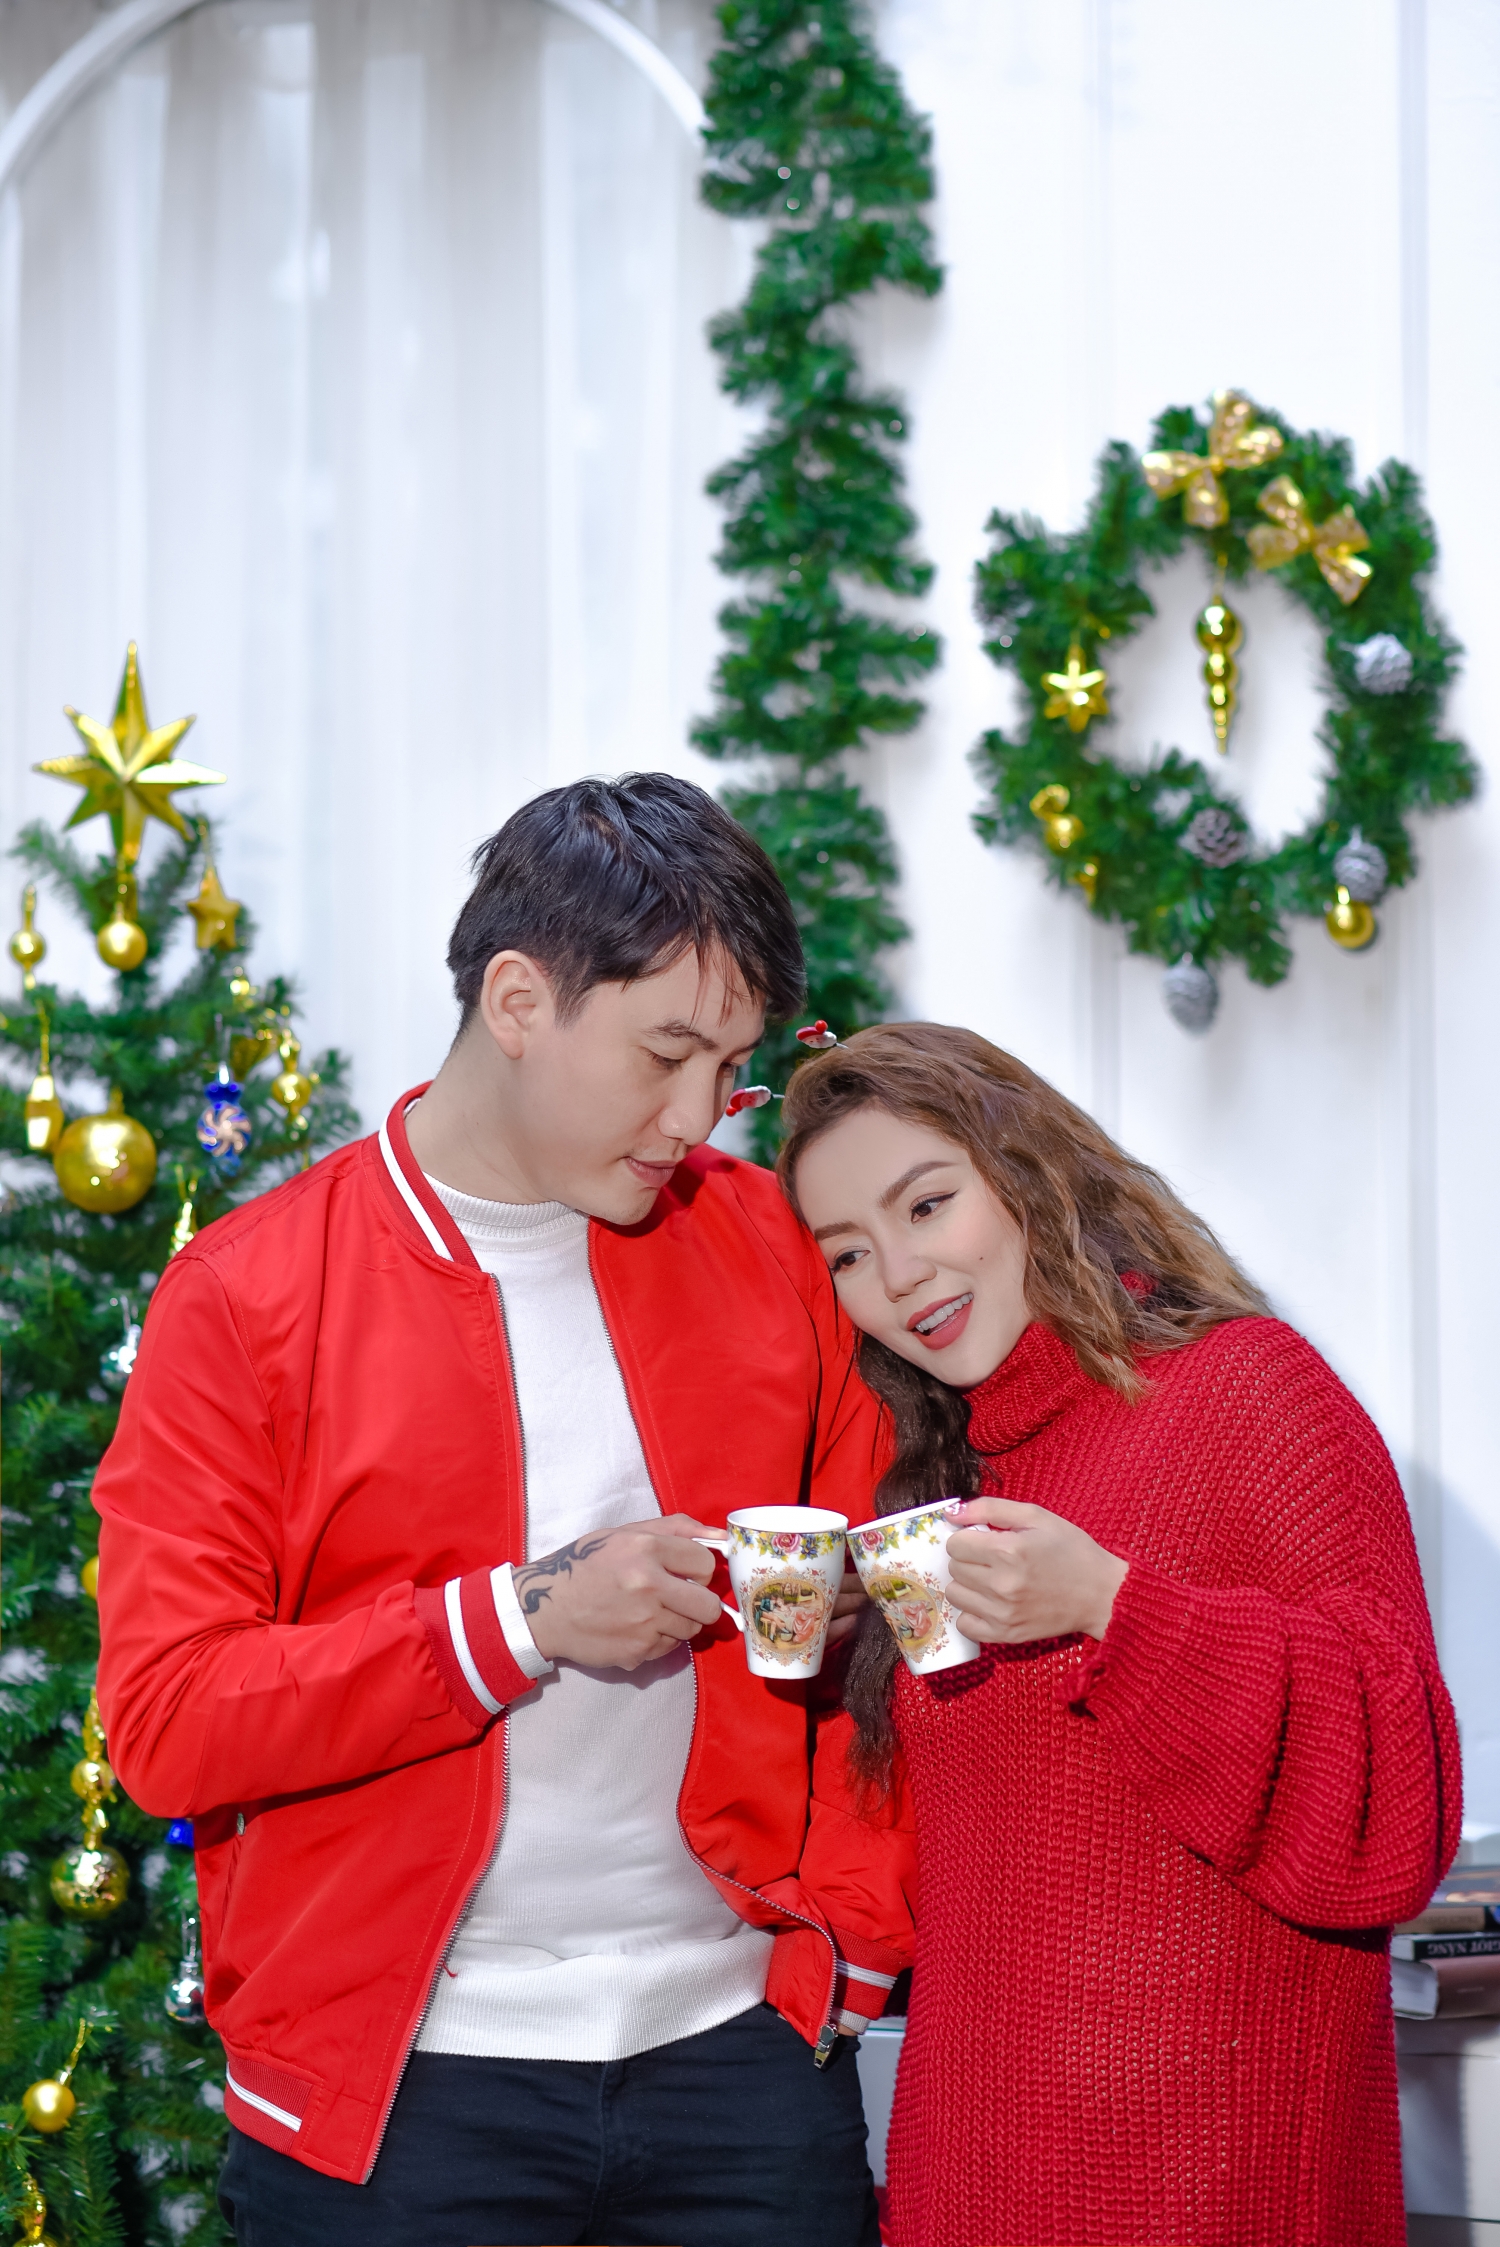 Nguyễn Ngọc Anh “đôi lứa xứng đôi” với Tô Minh Đức trong single đón Giáng sinh